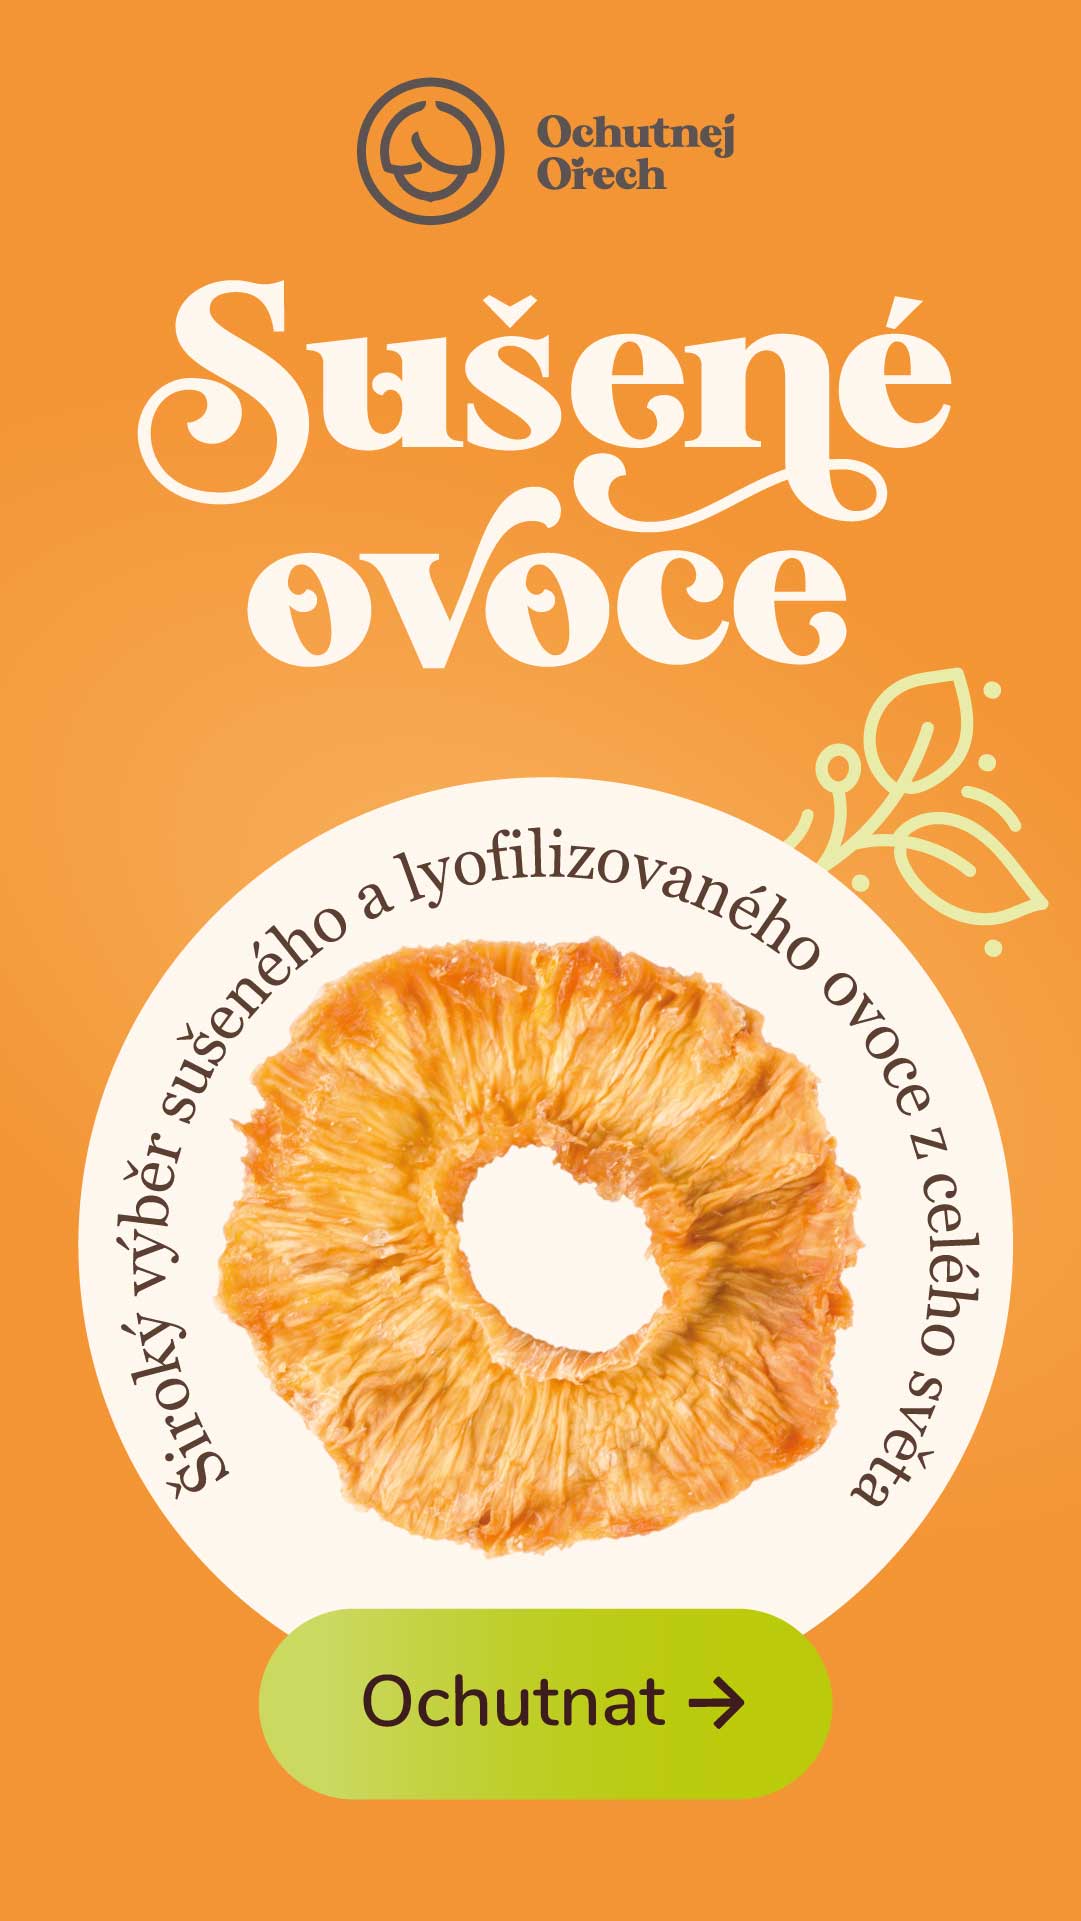 Reklamní banner sušený ananas Ochutnej Ořech